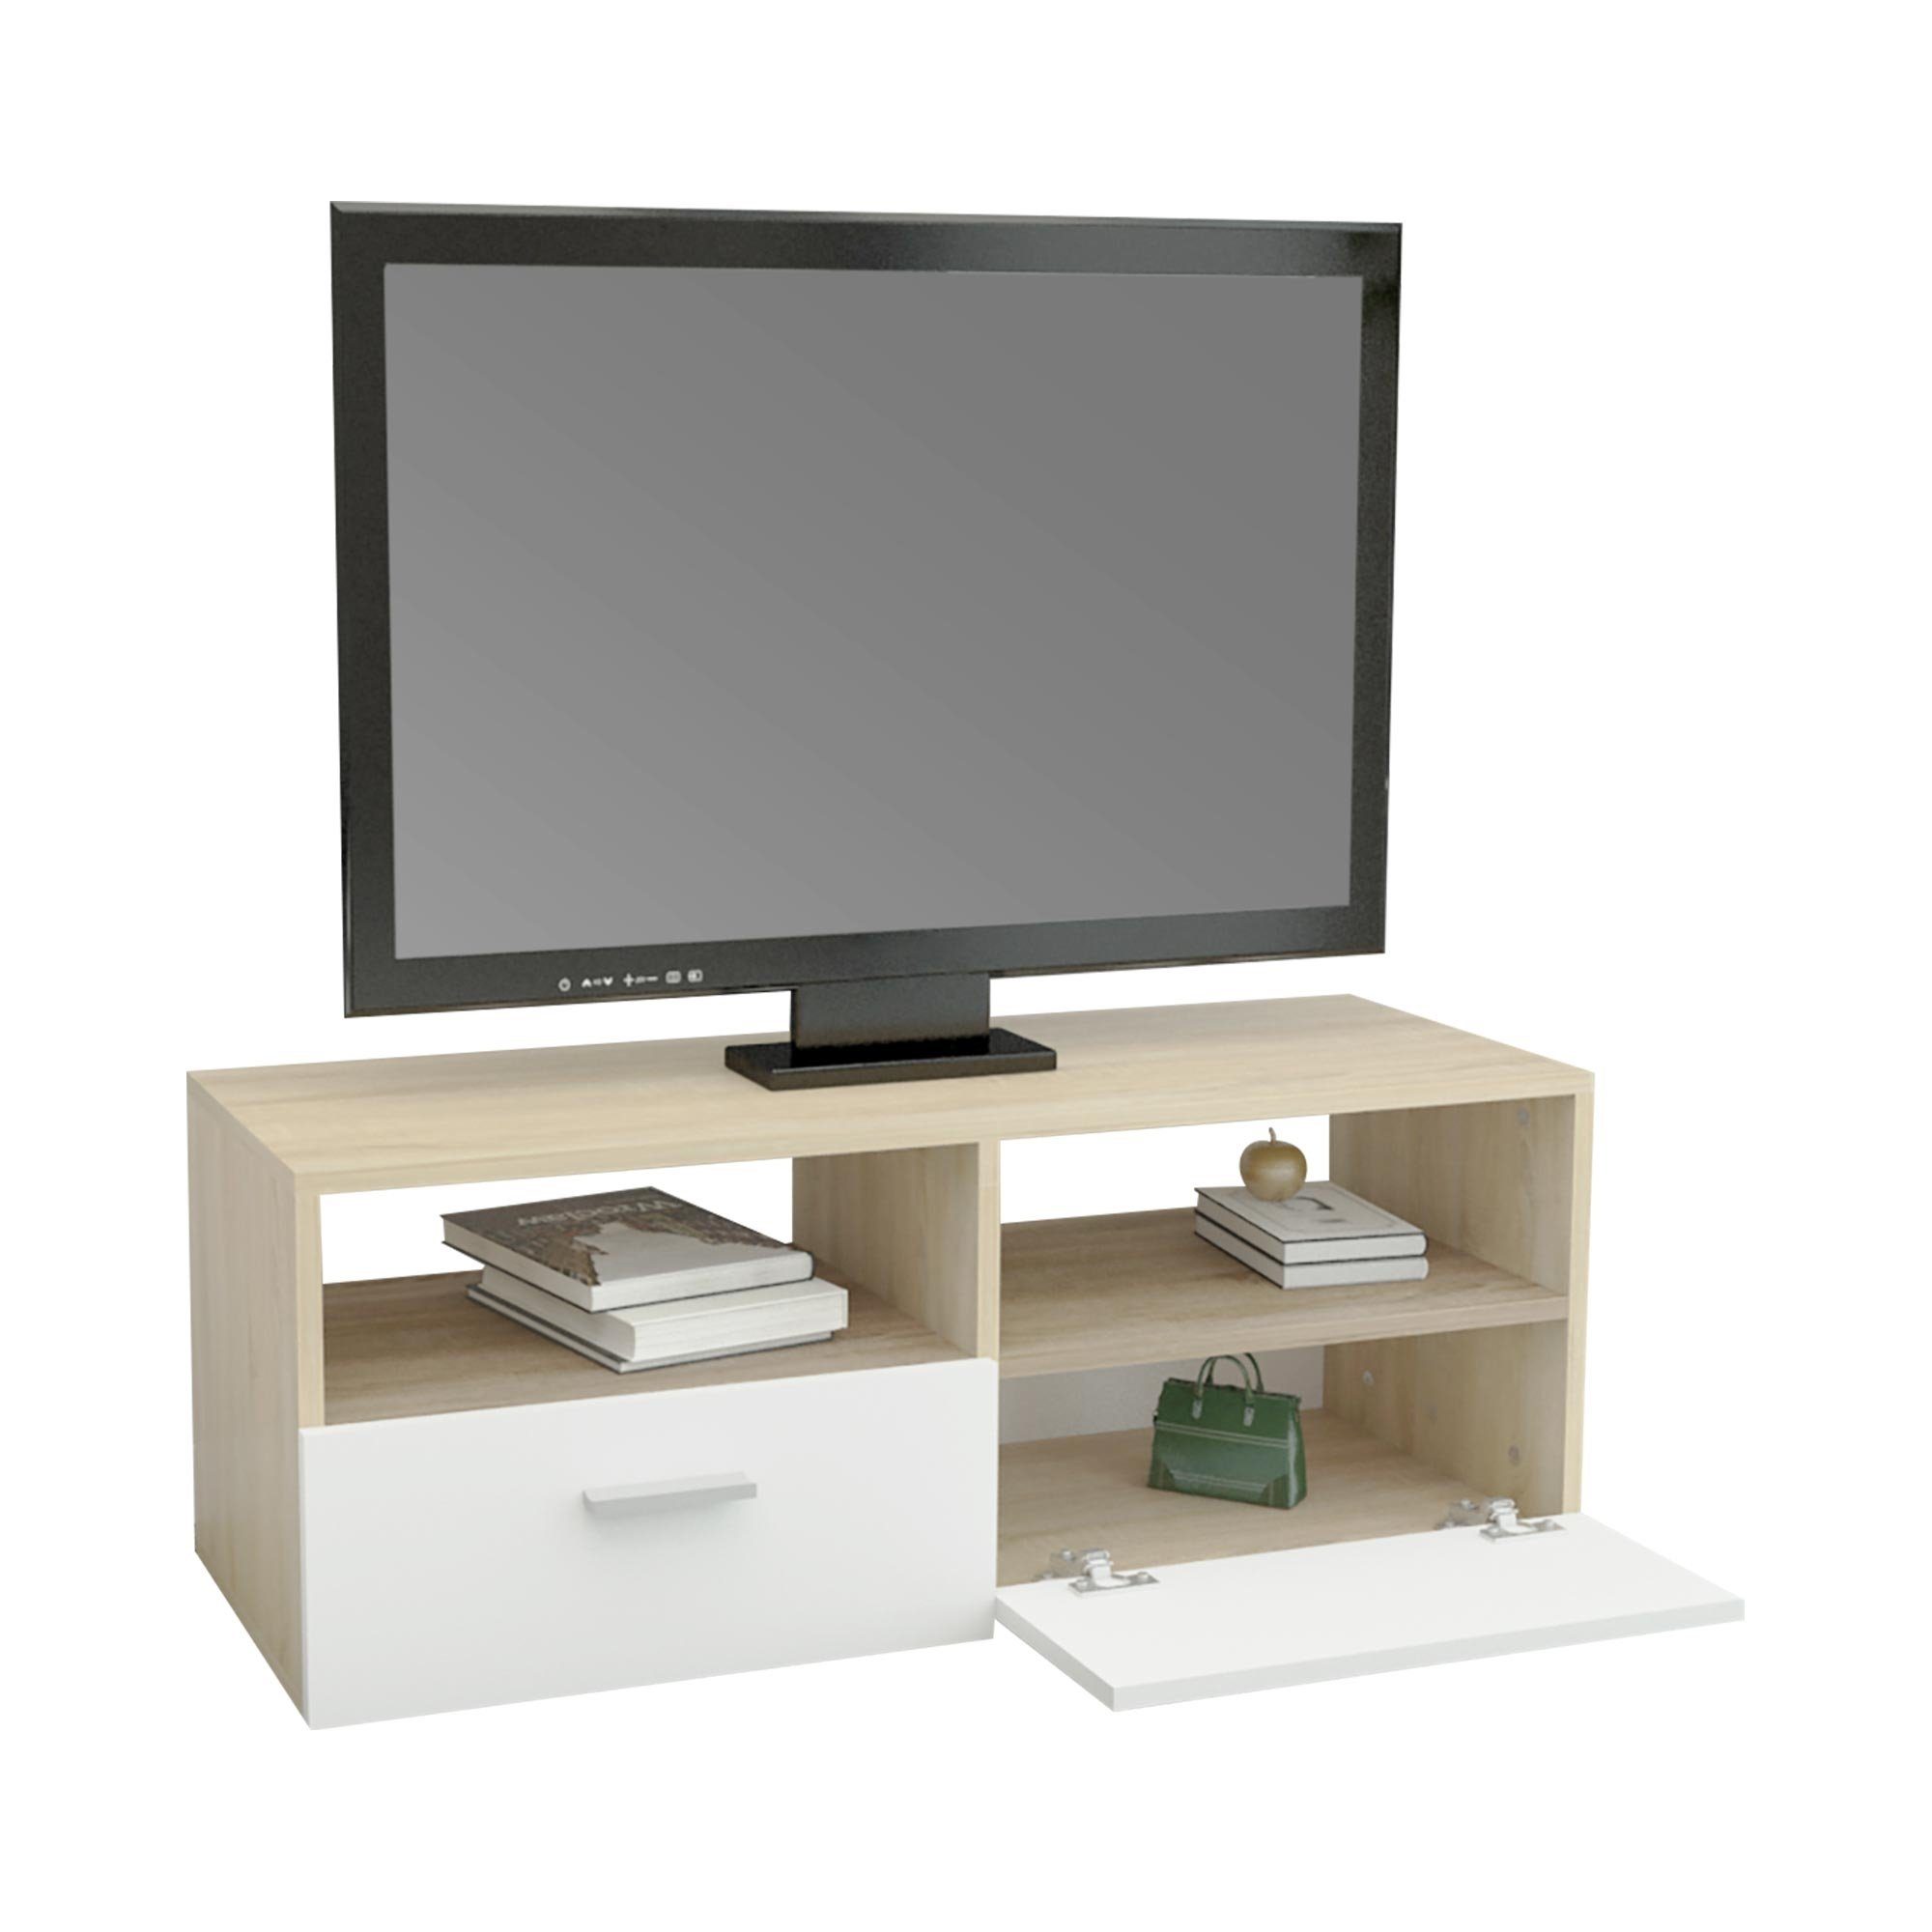 ML-DESIGN Sideboard TV-Lowboard Modernes TV-Board mit Stauraum für Wohnzimmer, aus Holz, mit 2 Klapptüren und 2 offenen Fächern Braun, Weiß